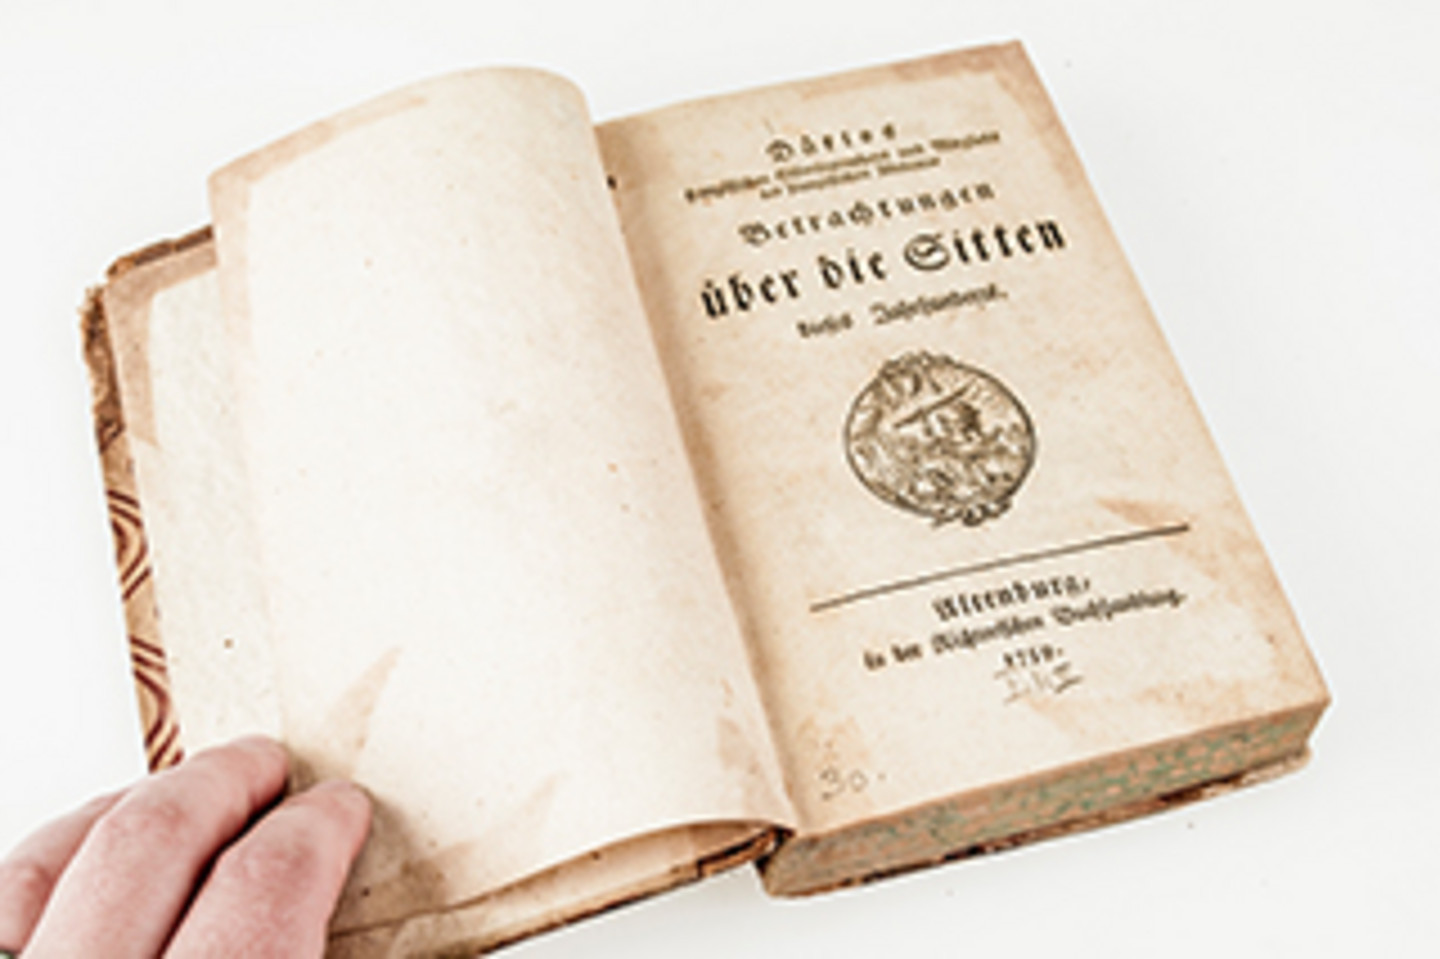 Foto eines offenen Buches mit dem Titelblatt "Betrachtungen über die Sitten dieses Jahrhunderts". Darunter befindet sich eine Art Wappen.